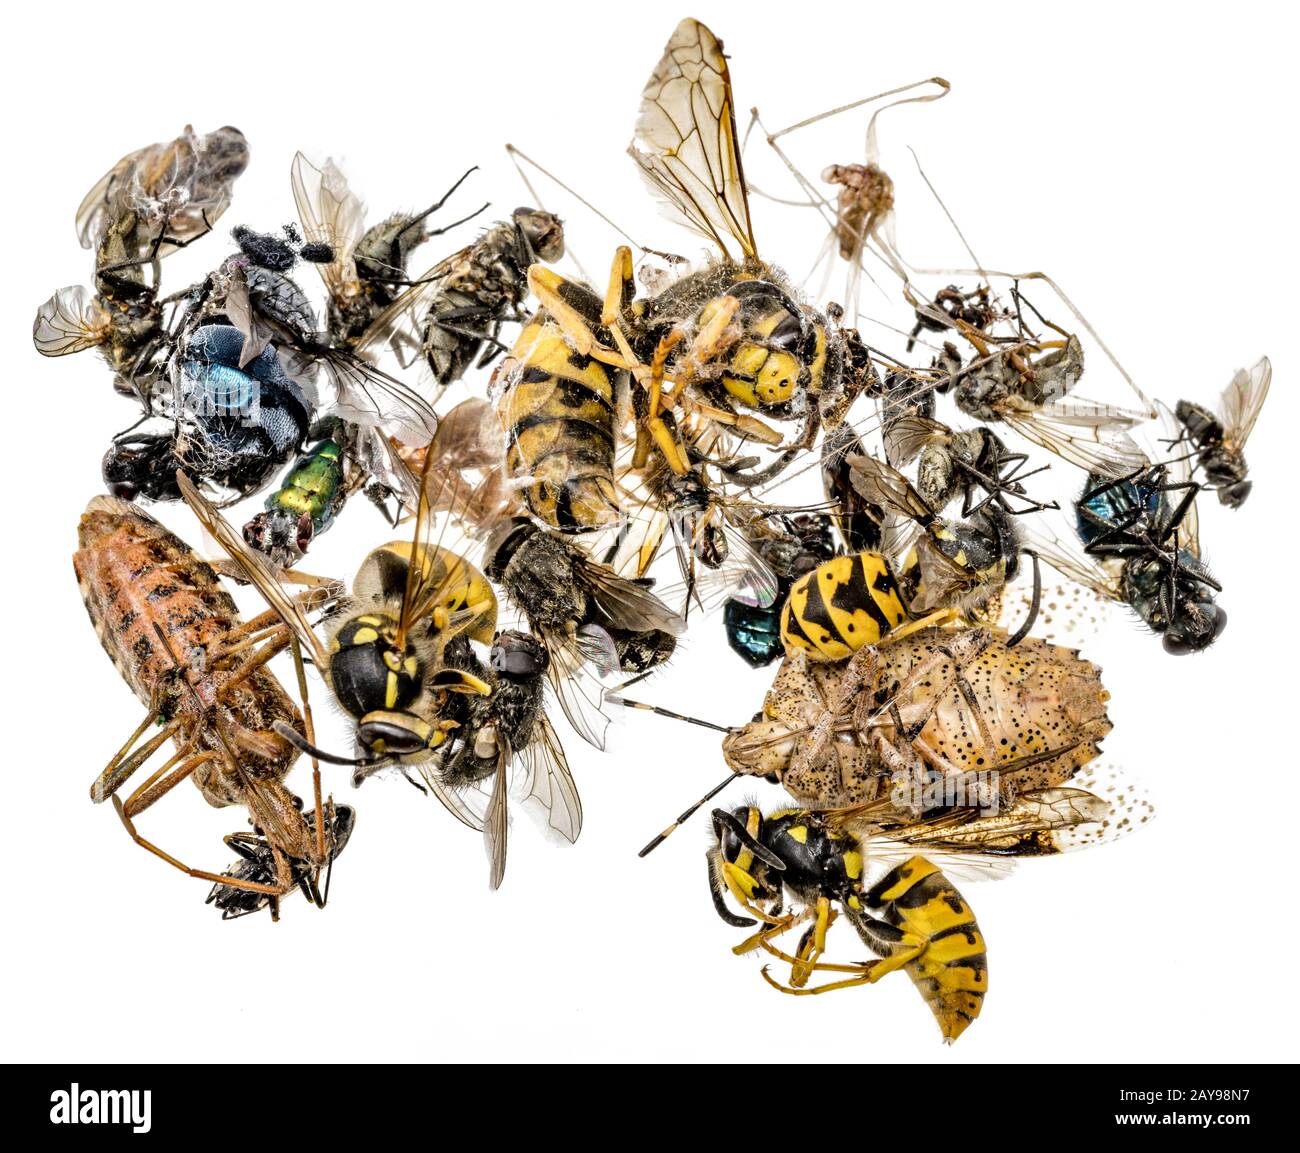 Molti diversi colorati insetti morti sono in una pila. Isolato su bianco Foto Stock